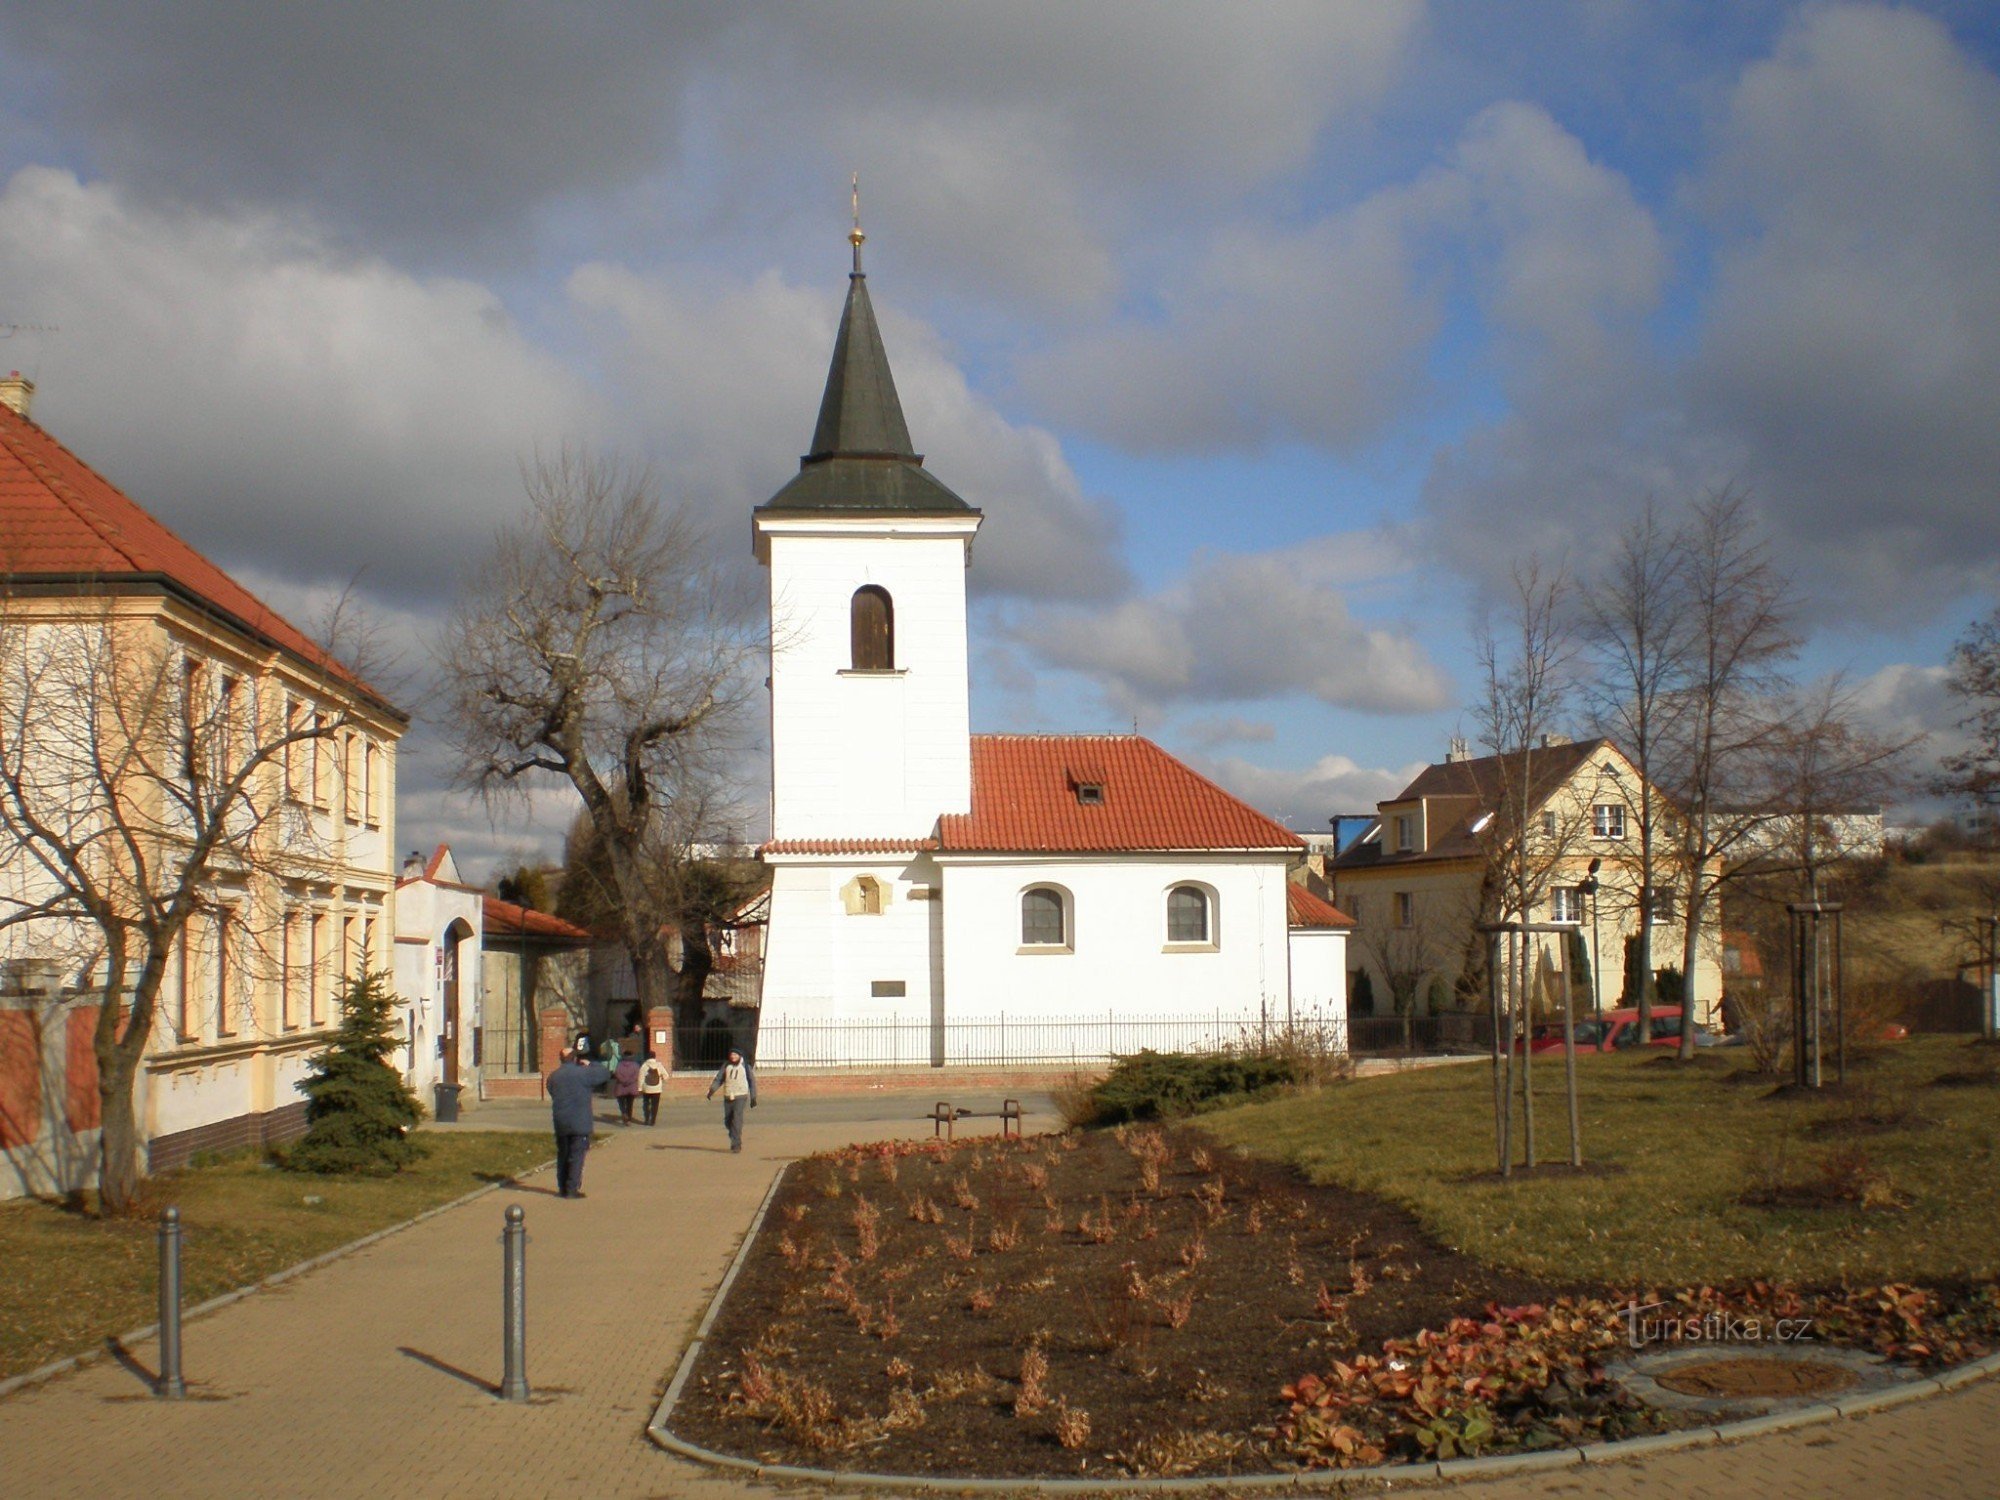 Burak - kościół św. Jaskółka oknówka